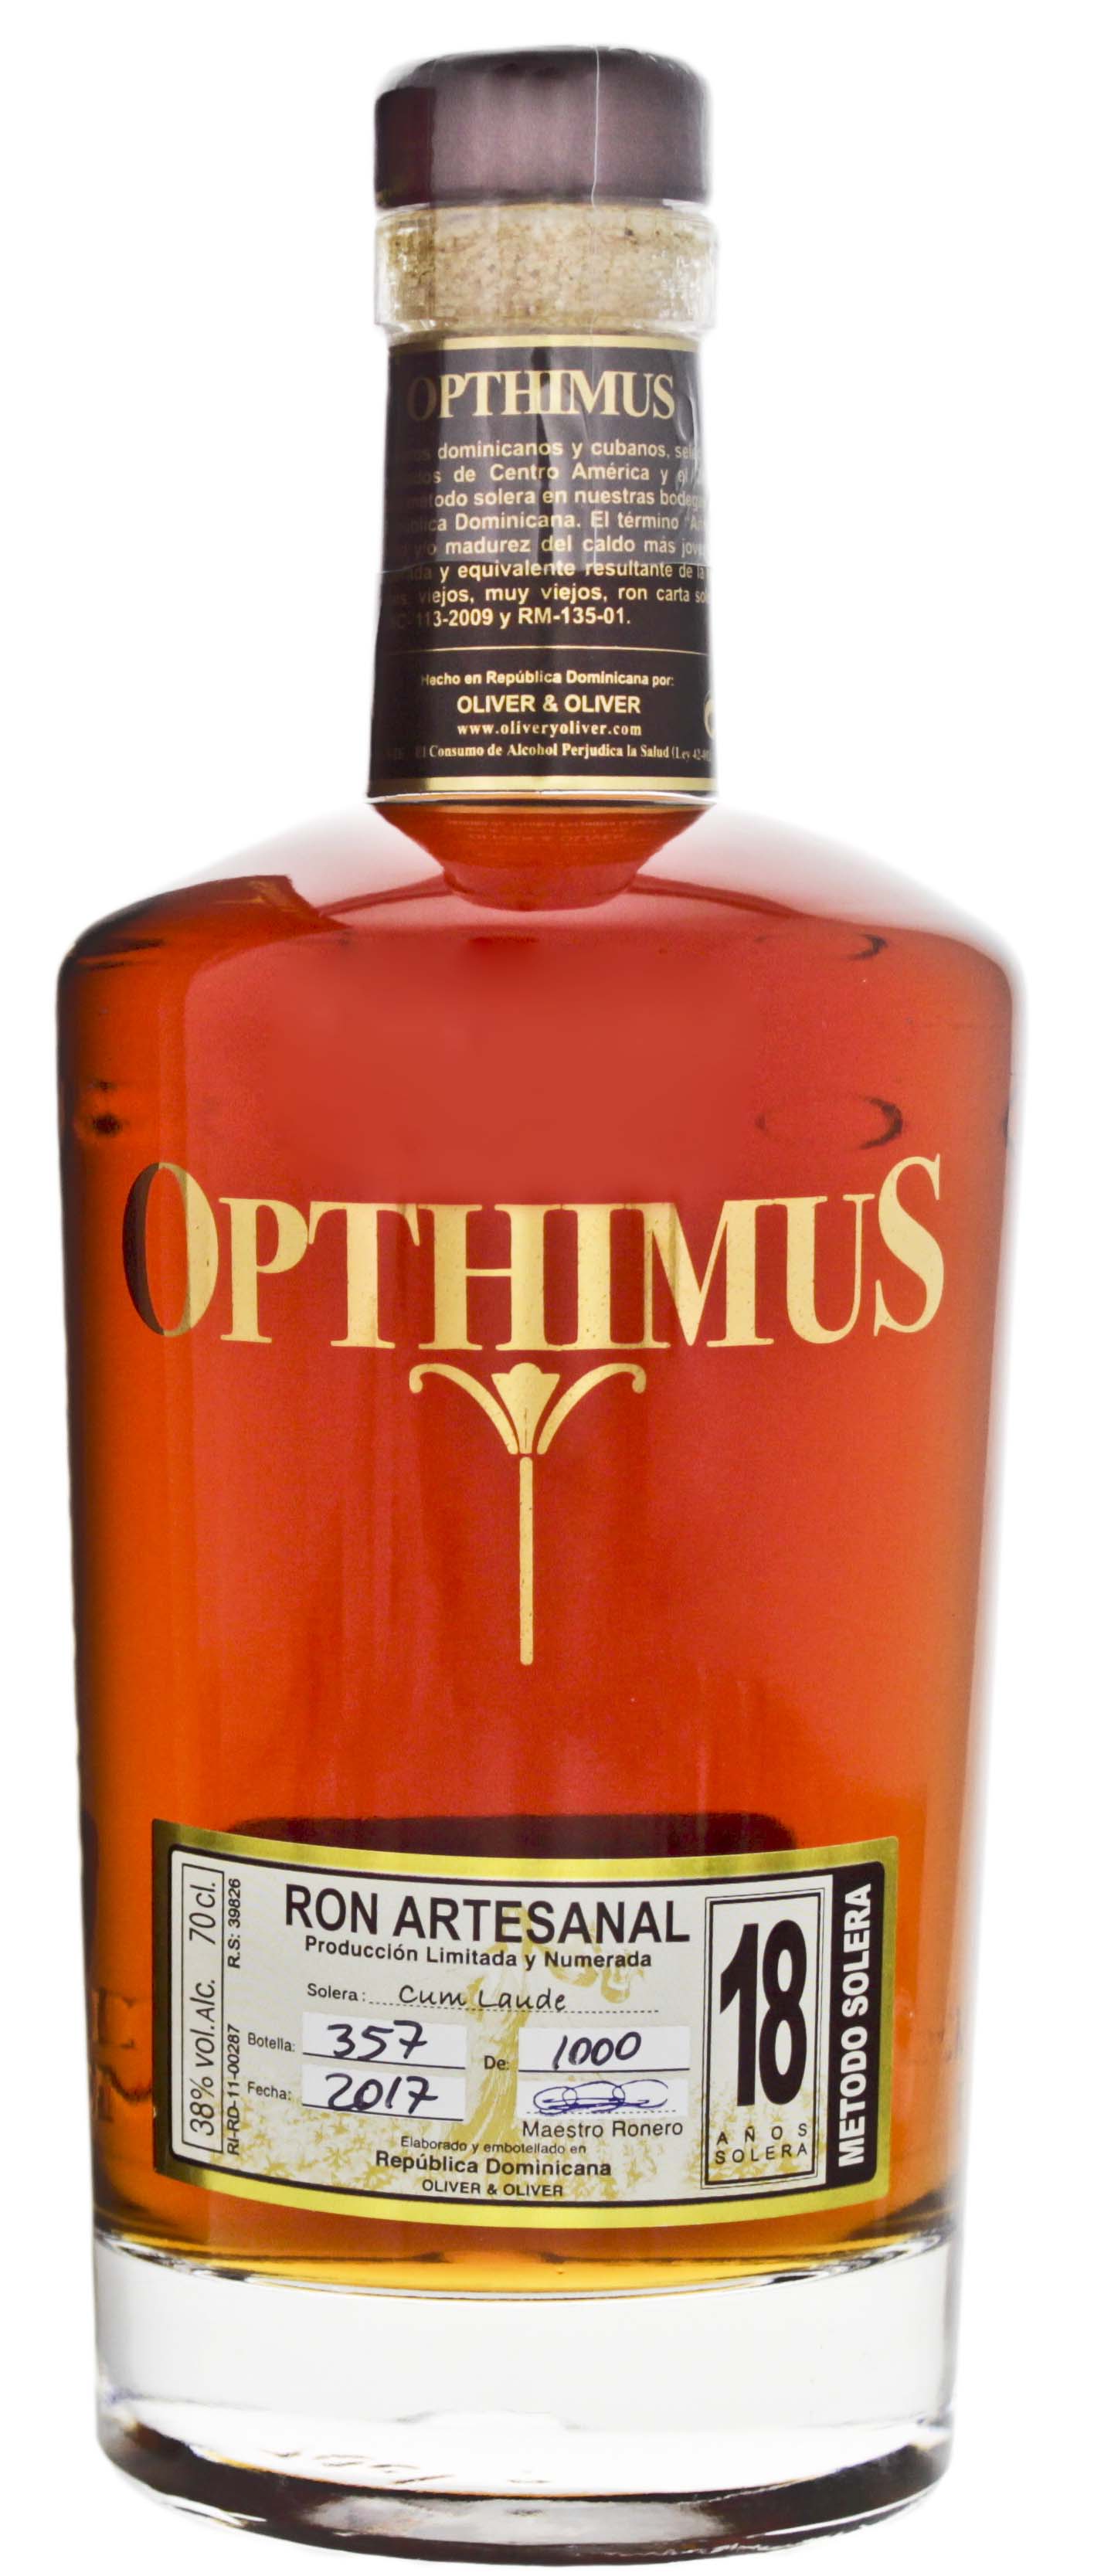 Opthimus Rum 18 Jahre Jetzt Günstig Kaufen Im Rum Online Shop